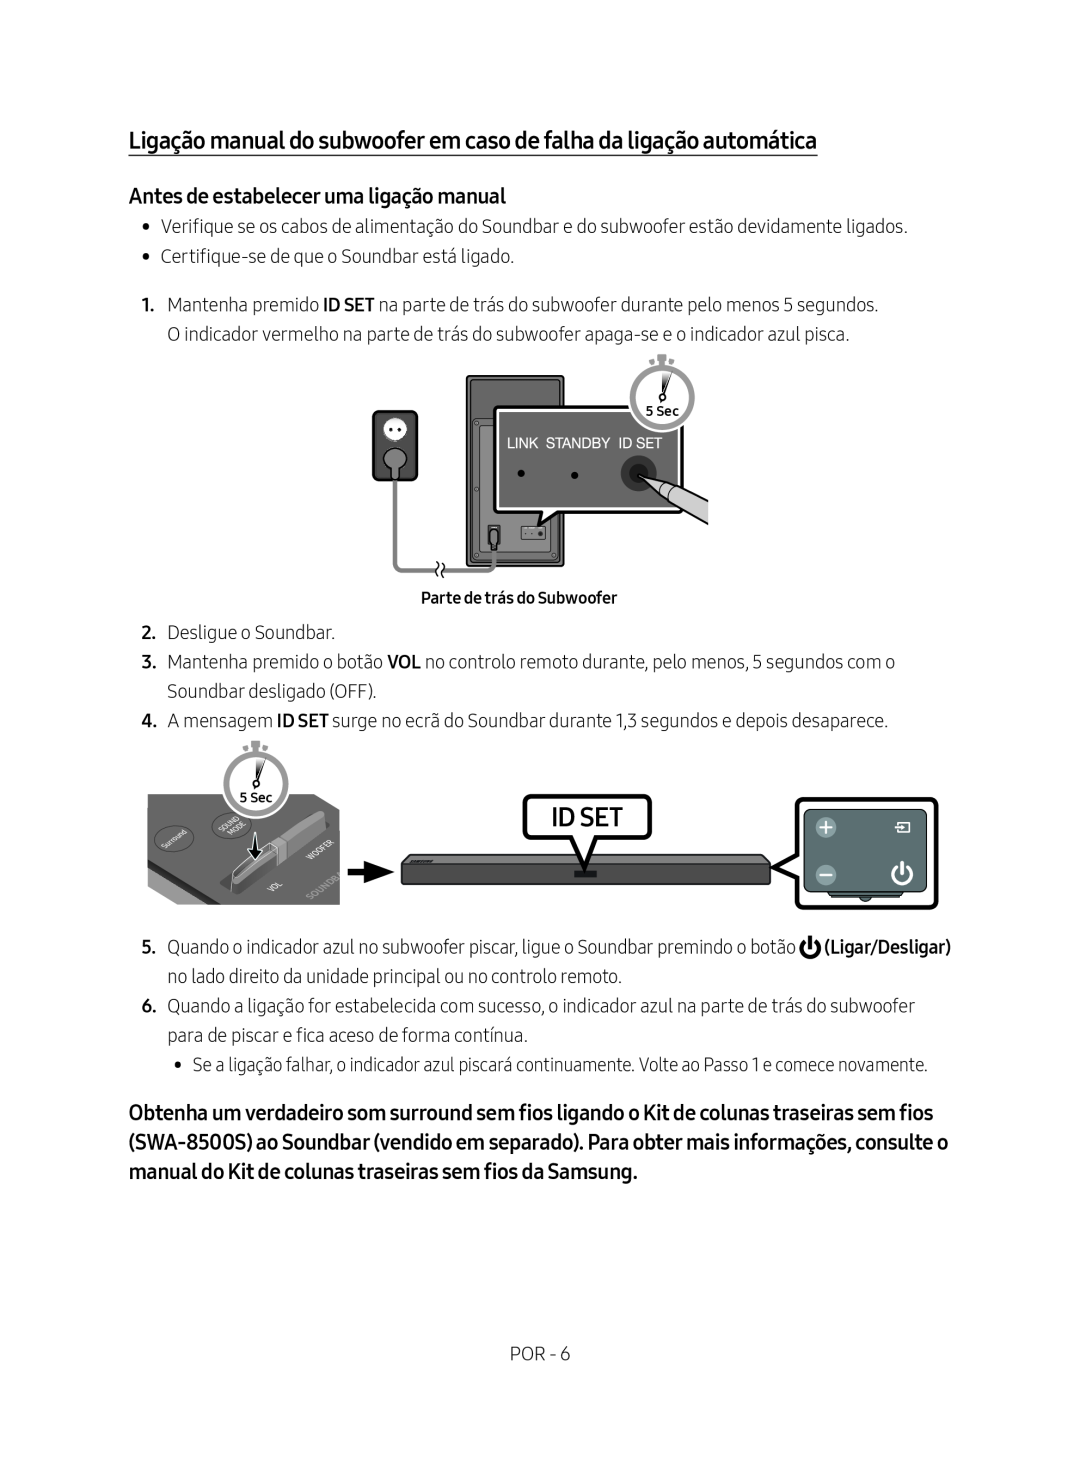 Samsung HW-M450/ZG, HW-M450/EN, HW-M450/ZF Ligação manual do subwoofer em caso de falha da ligação automática, Id Set 